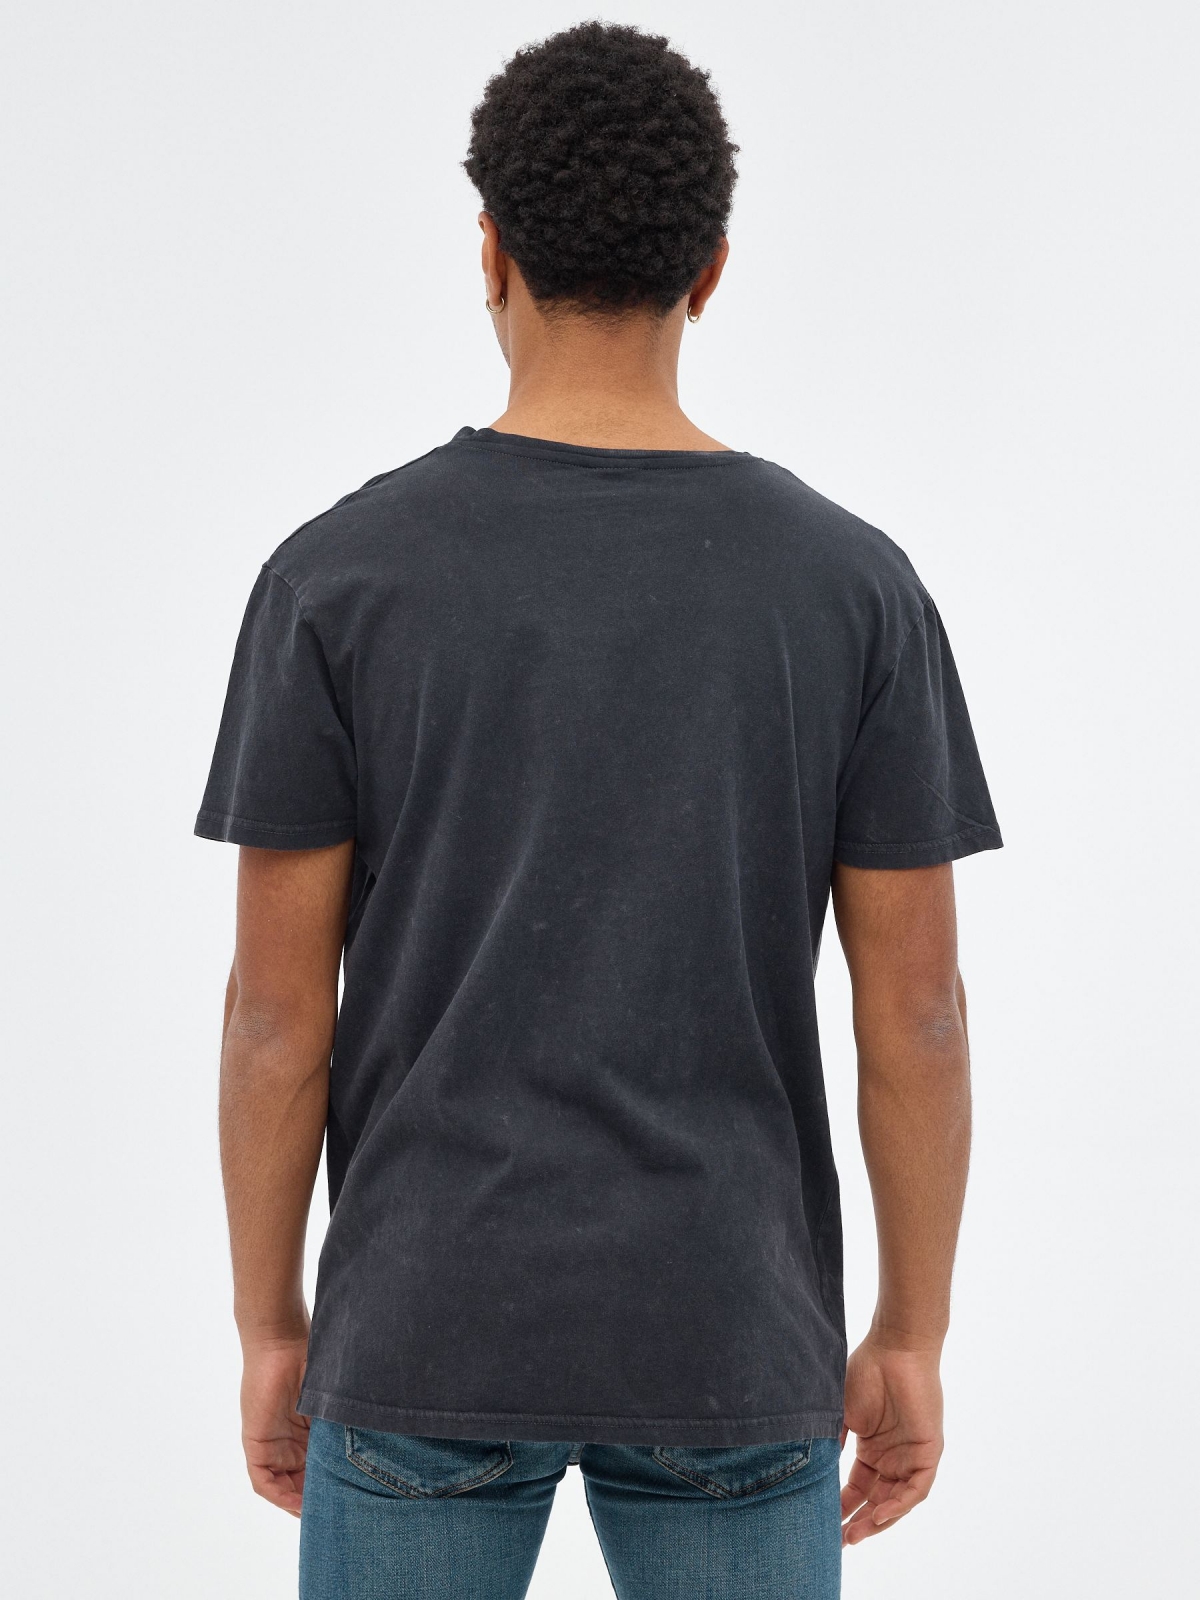 T-shirt do crânio preto vista meia traseira